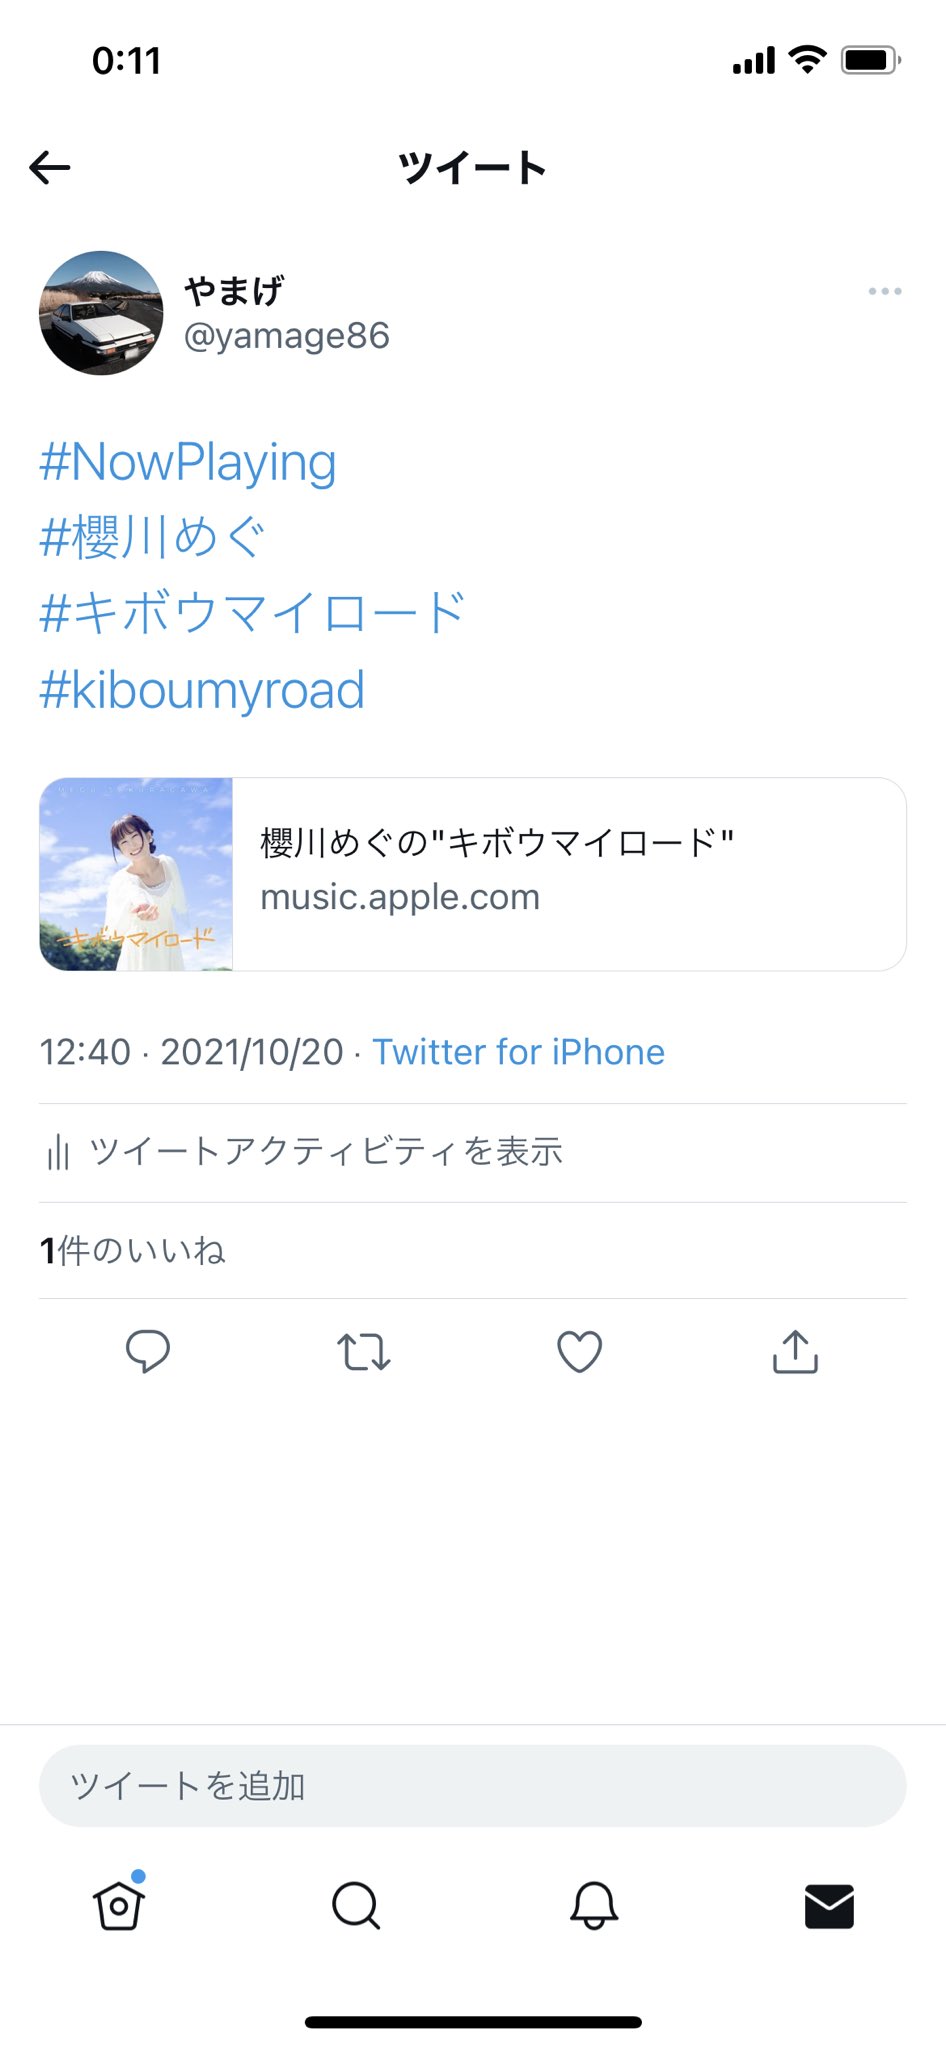 櫻川めぐ on Twitter: 